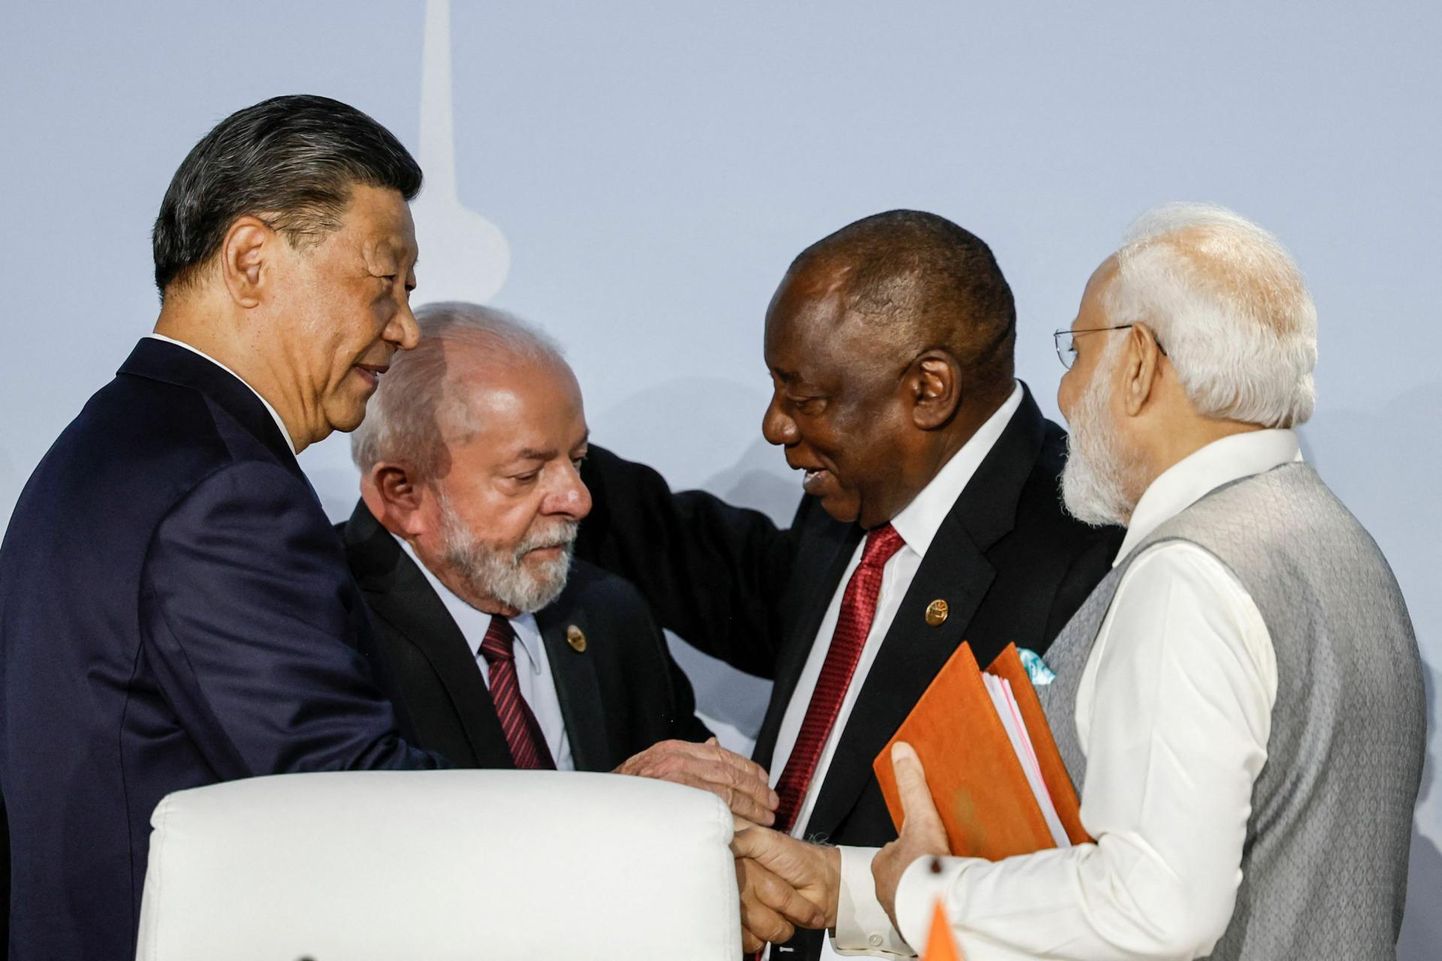 Eelmisel nädalala Johannesburgis kohtunud veel laienemata BRICSi liidrid: Venemaa presidendi Vladimir Putini koju jäämisel soojendasid isekeskis suhteid Hiina president Xi Jinping (vasakult), Brasiilia riigipea Luiz Inácio Lula da Silva, LAVi president Cyril Ramaphosa ja India peaminister Narendra Modi. 